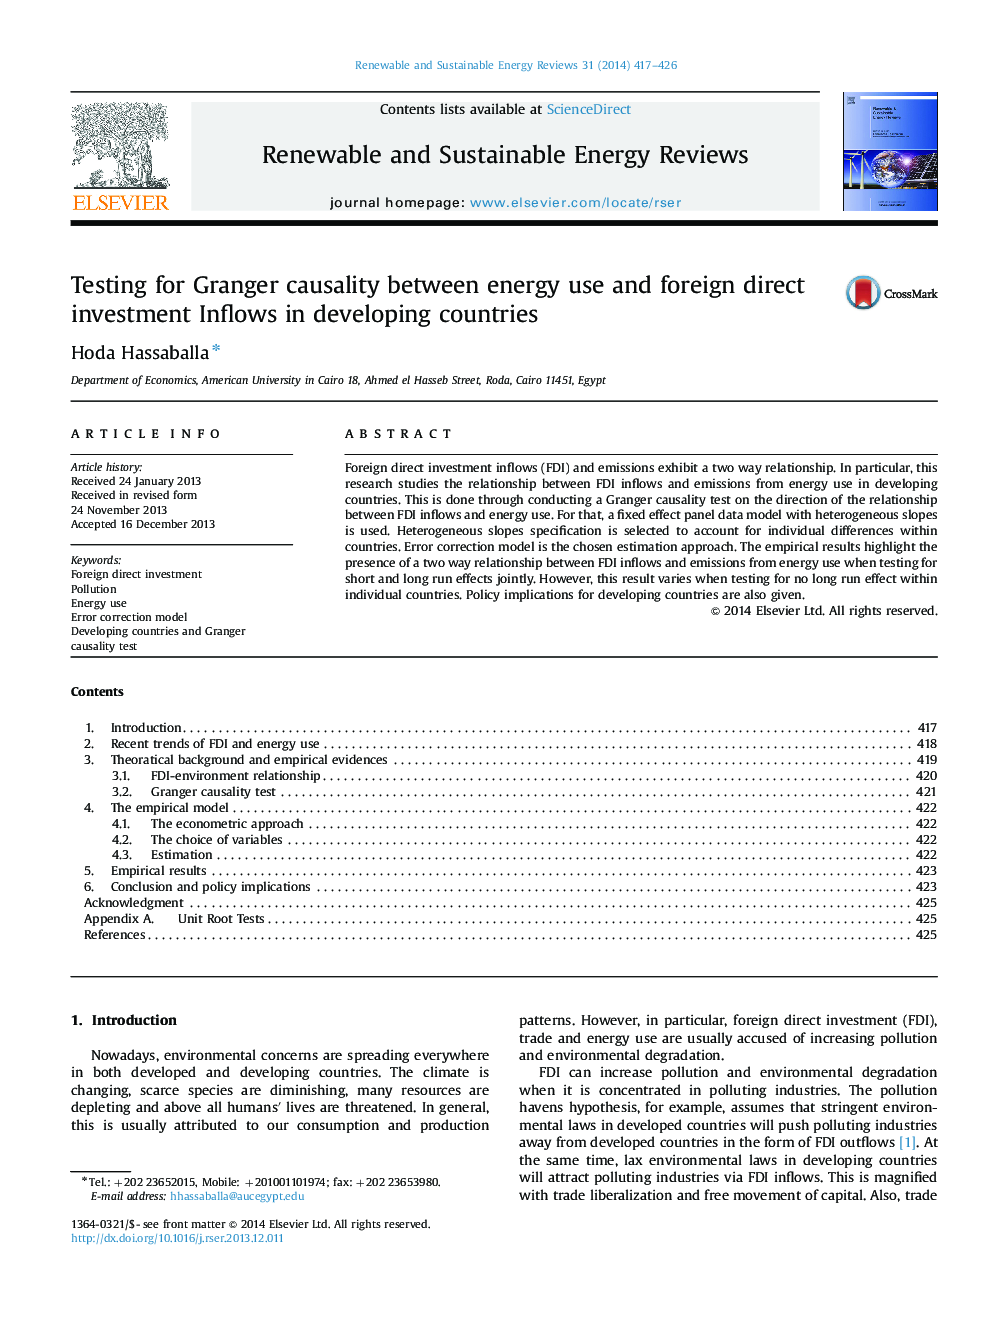 آزمون علیت گرنجر بین استفاده از انرژی و سرمایه گذاری مستقیم خارجی در کشورهای در حال توسعه 